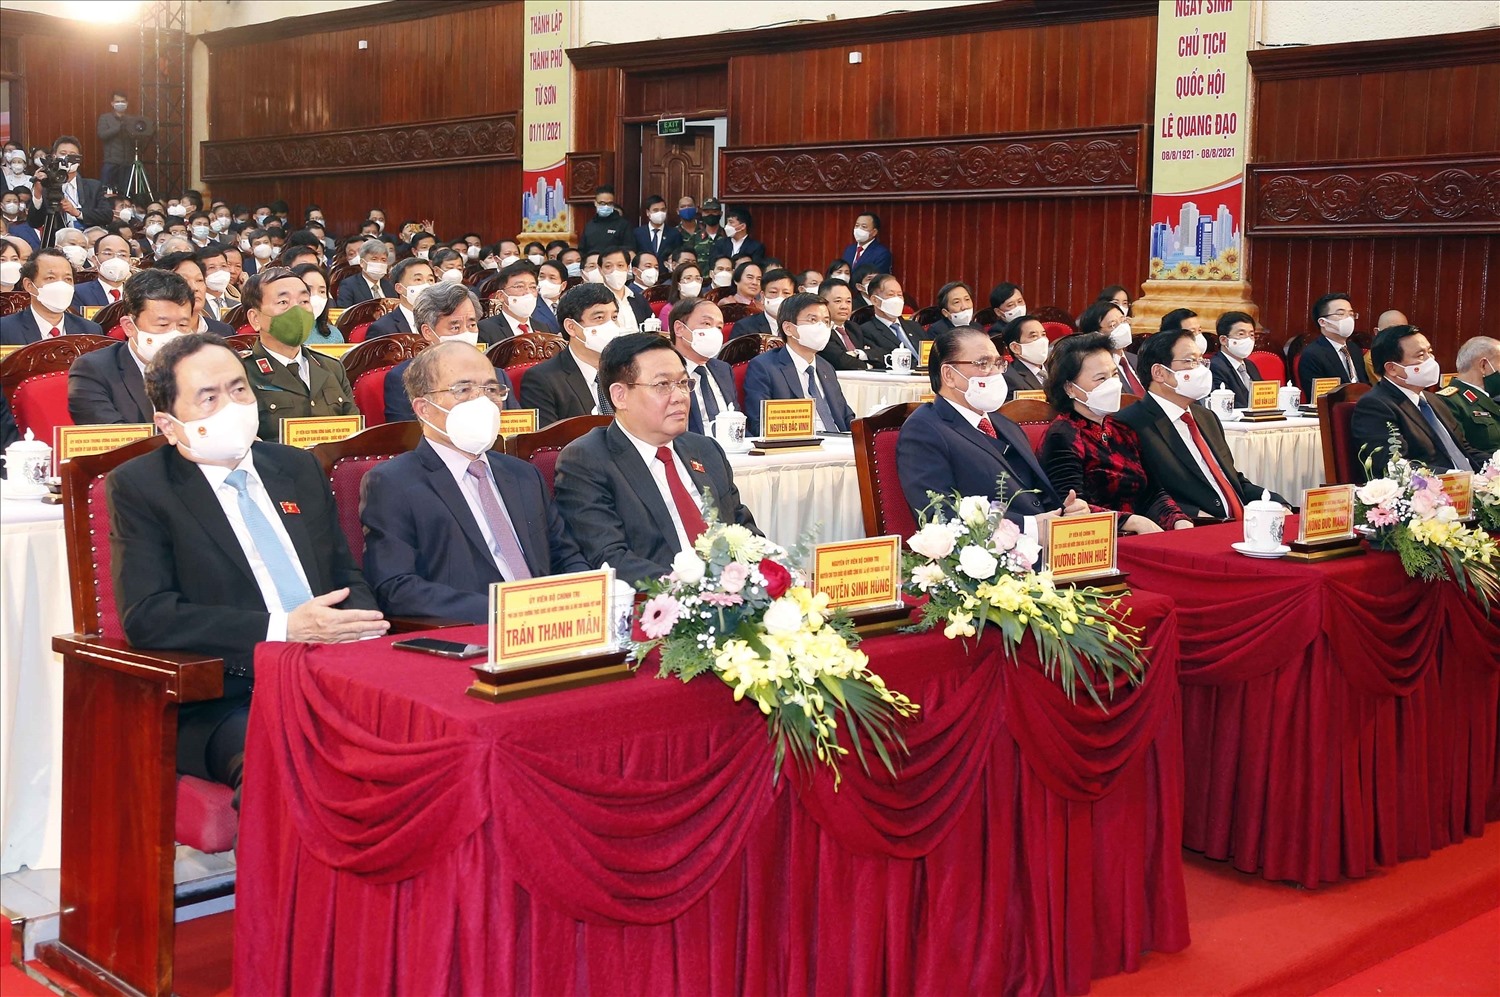 Các đại biểu dự Lễ kỷ niệm 100 năm Ngày sinh đồng chí Lê Quang Đạo và công bố Nghị quyết thành lập thành phố Từ Sơn, Bắc Ninh.